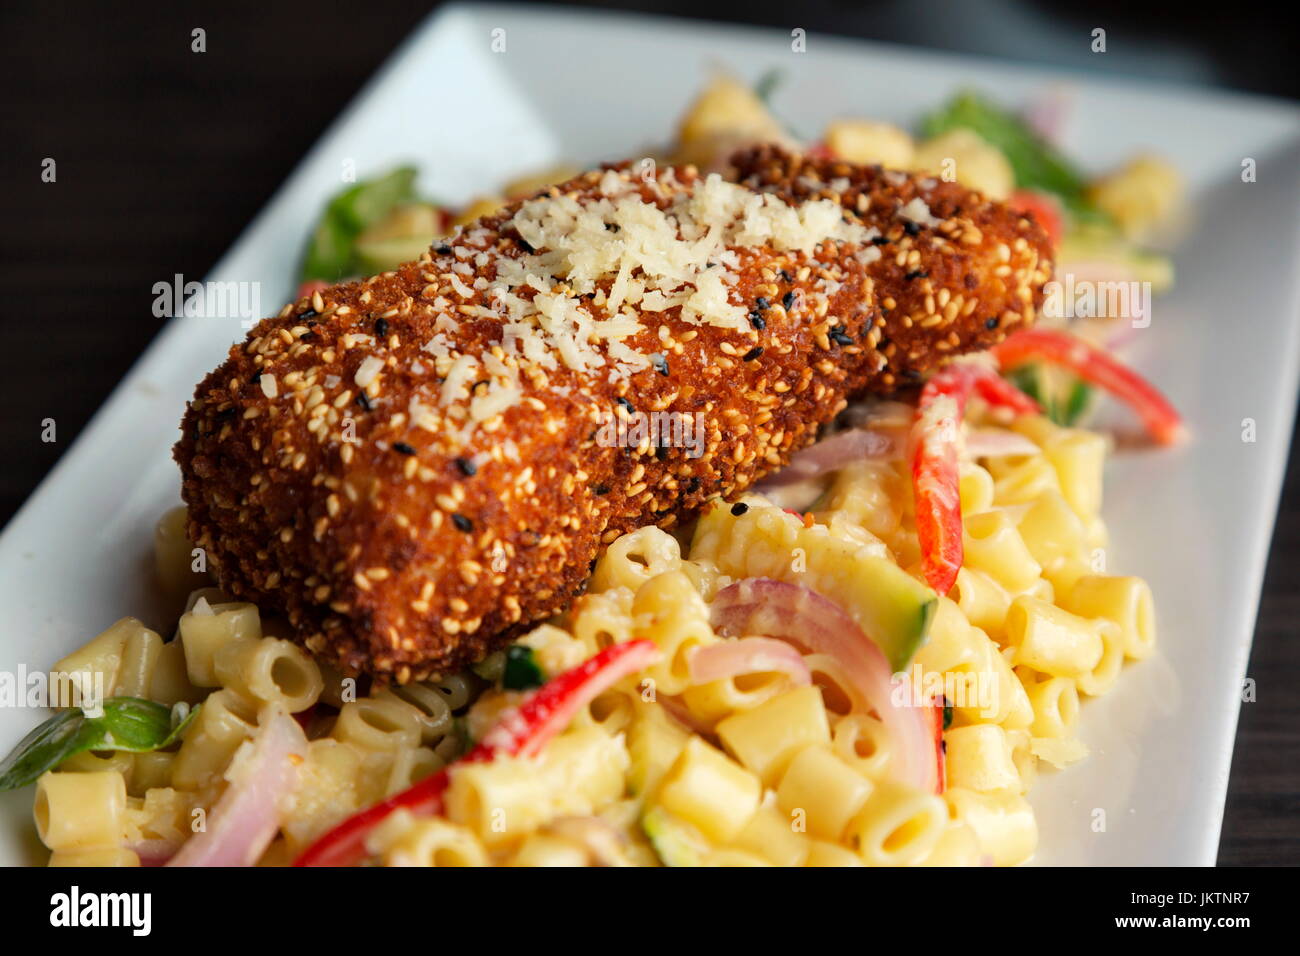 Frische Heilbutt Meeresfrüchten lockt mit Sesam Samen Kruste und Nudel-Salat auf weißem Teller Stockfoto